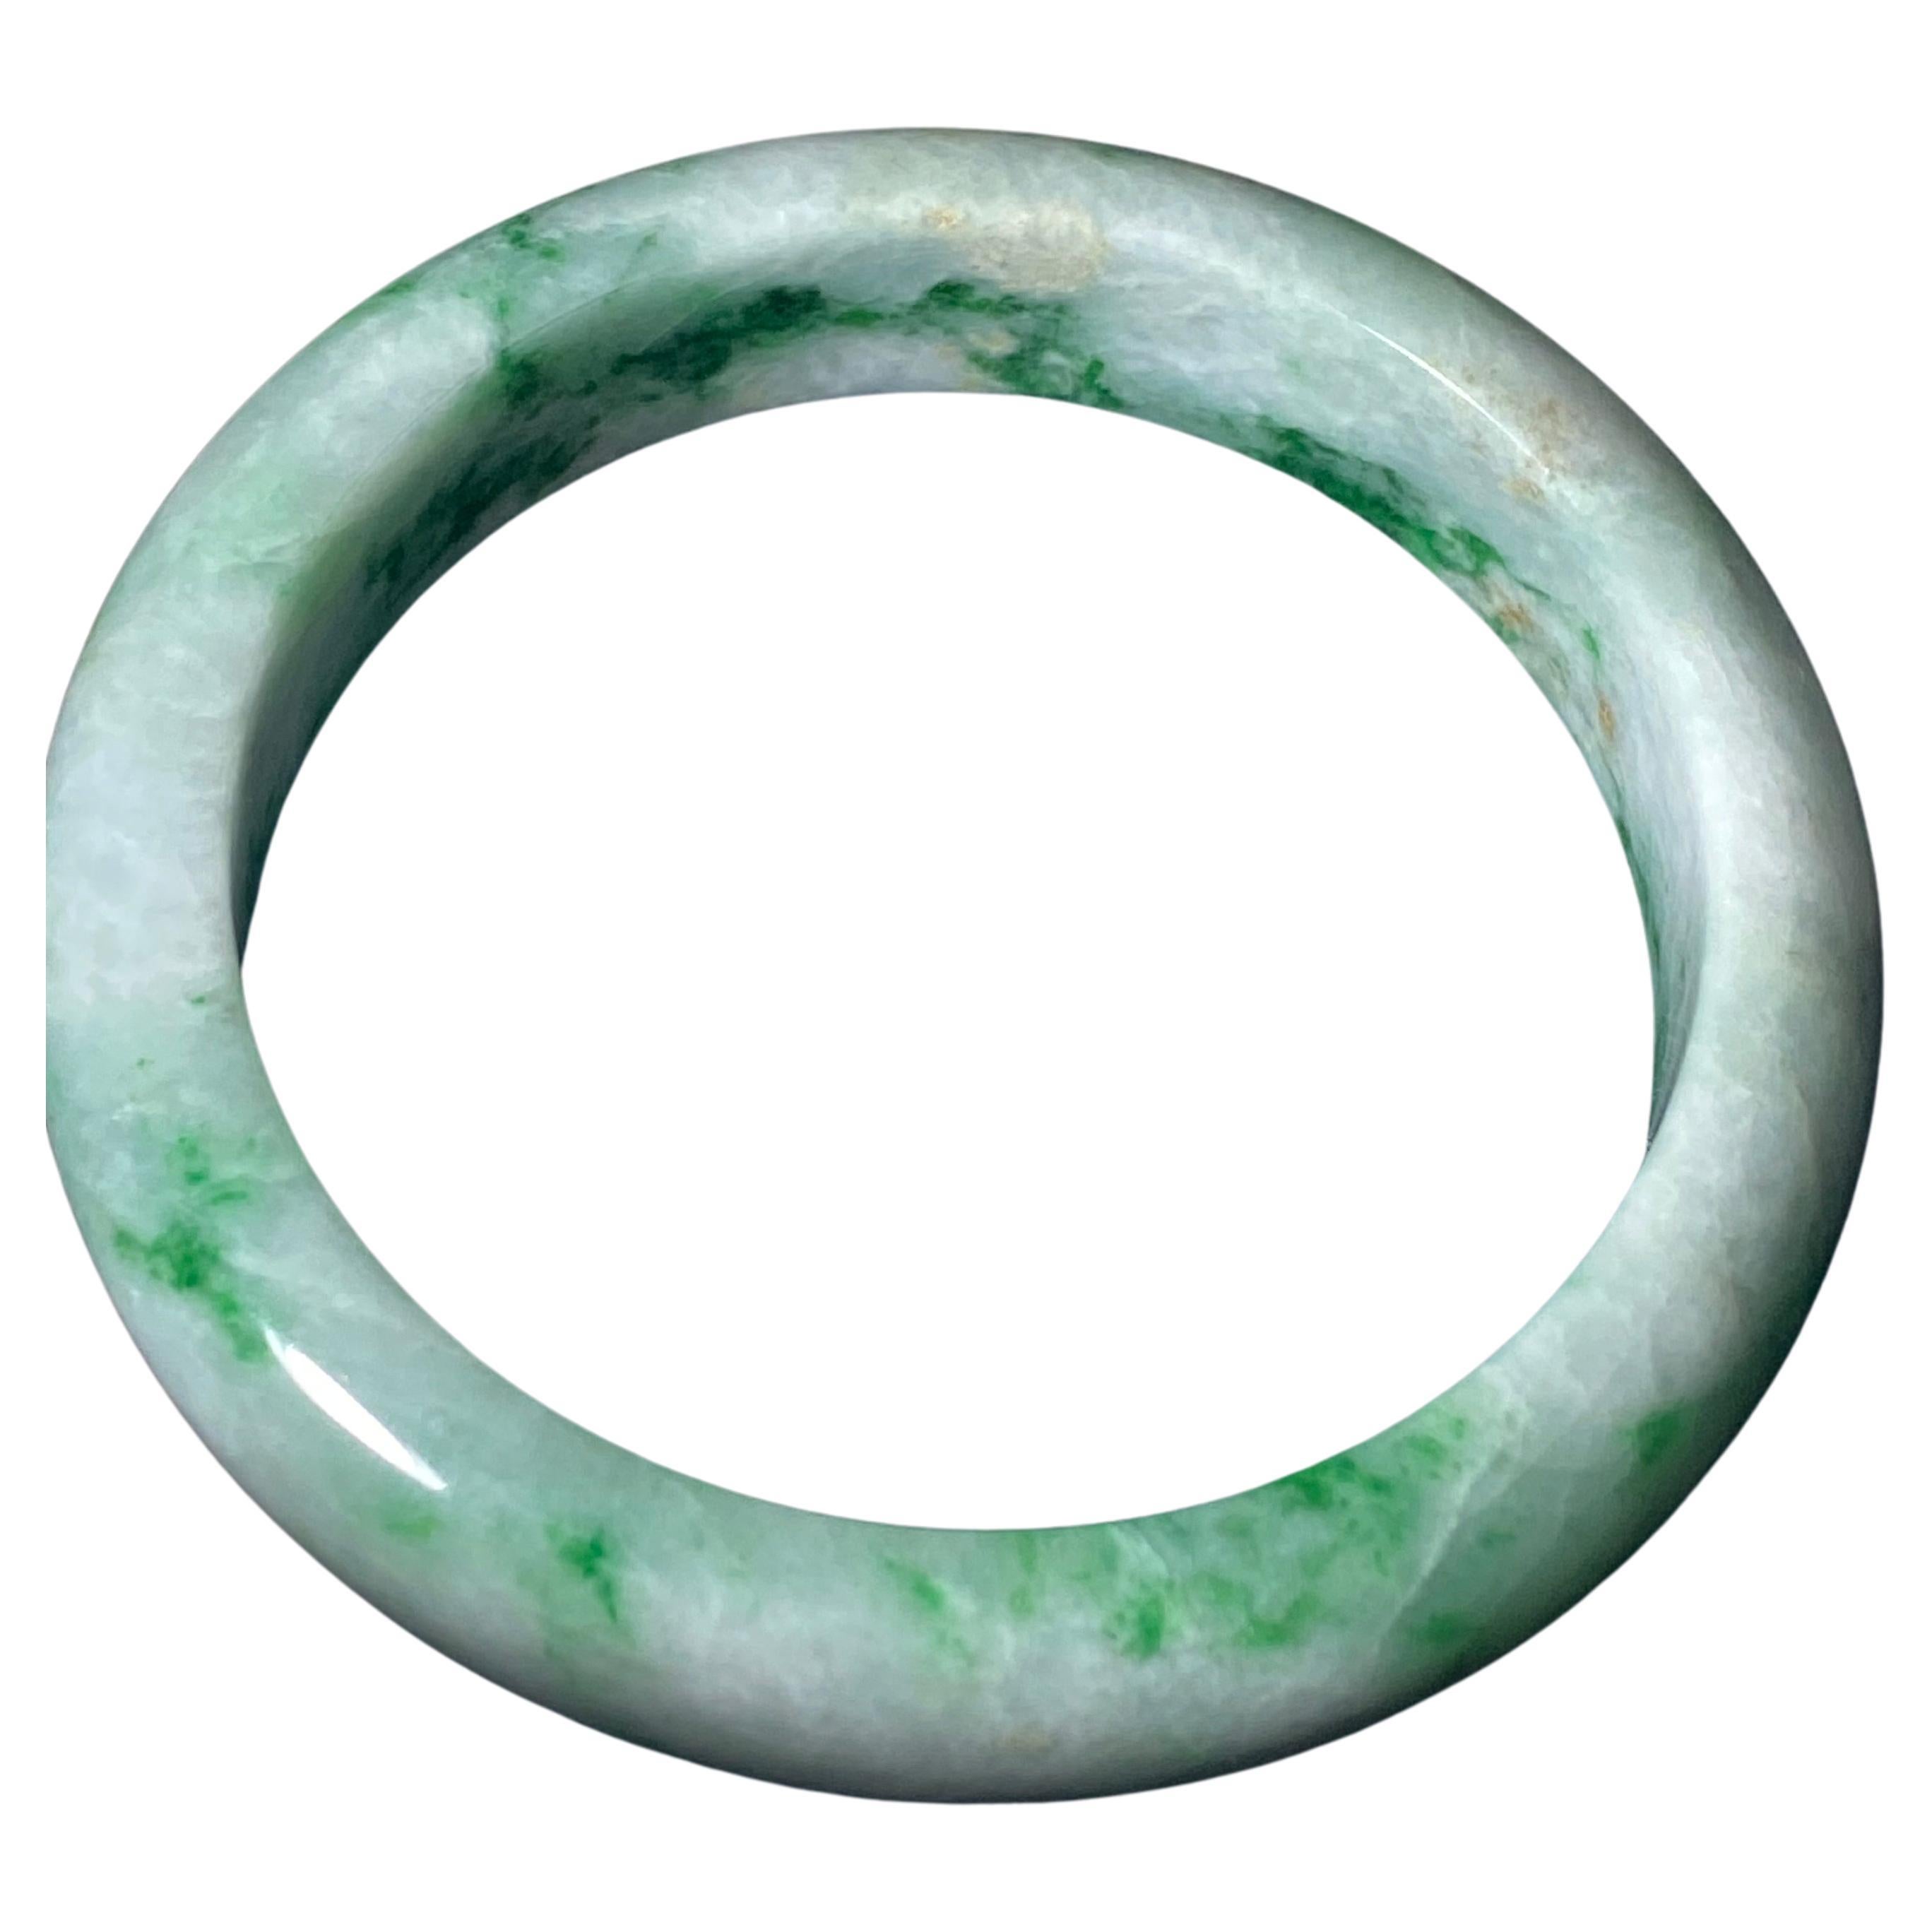 Runder grüner und weißer Jade-Armreif, 65,3gr. 15 mm breit, 21 cm Durchmesser.